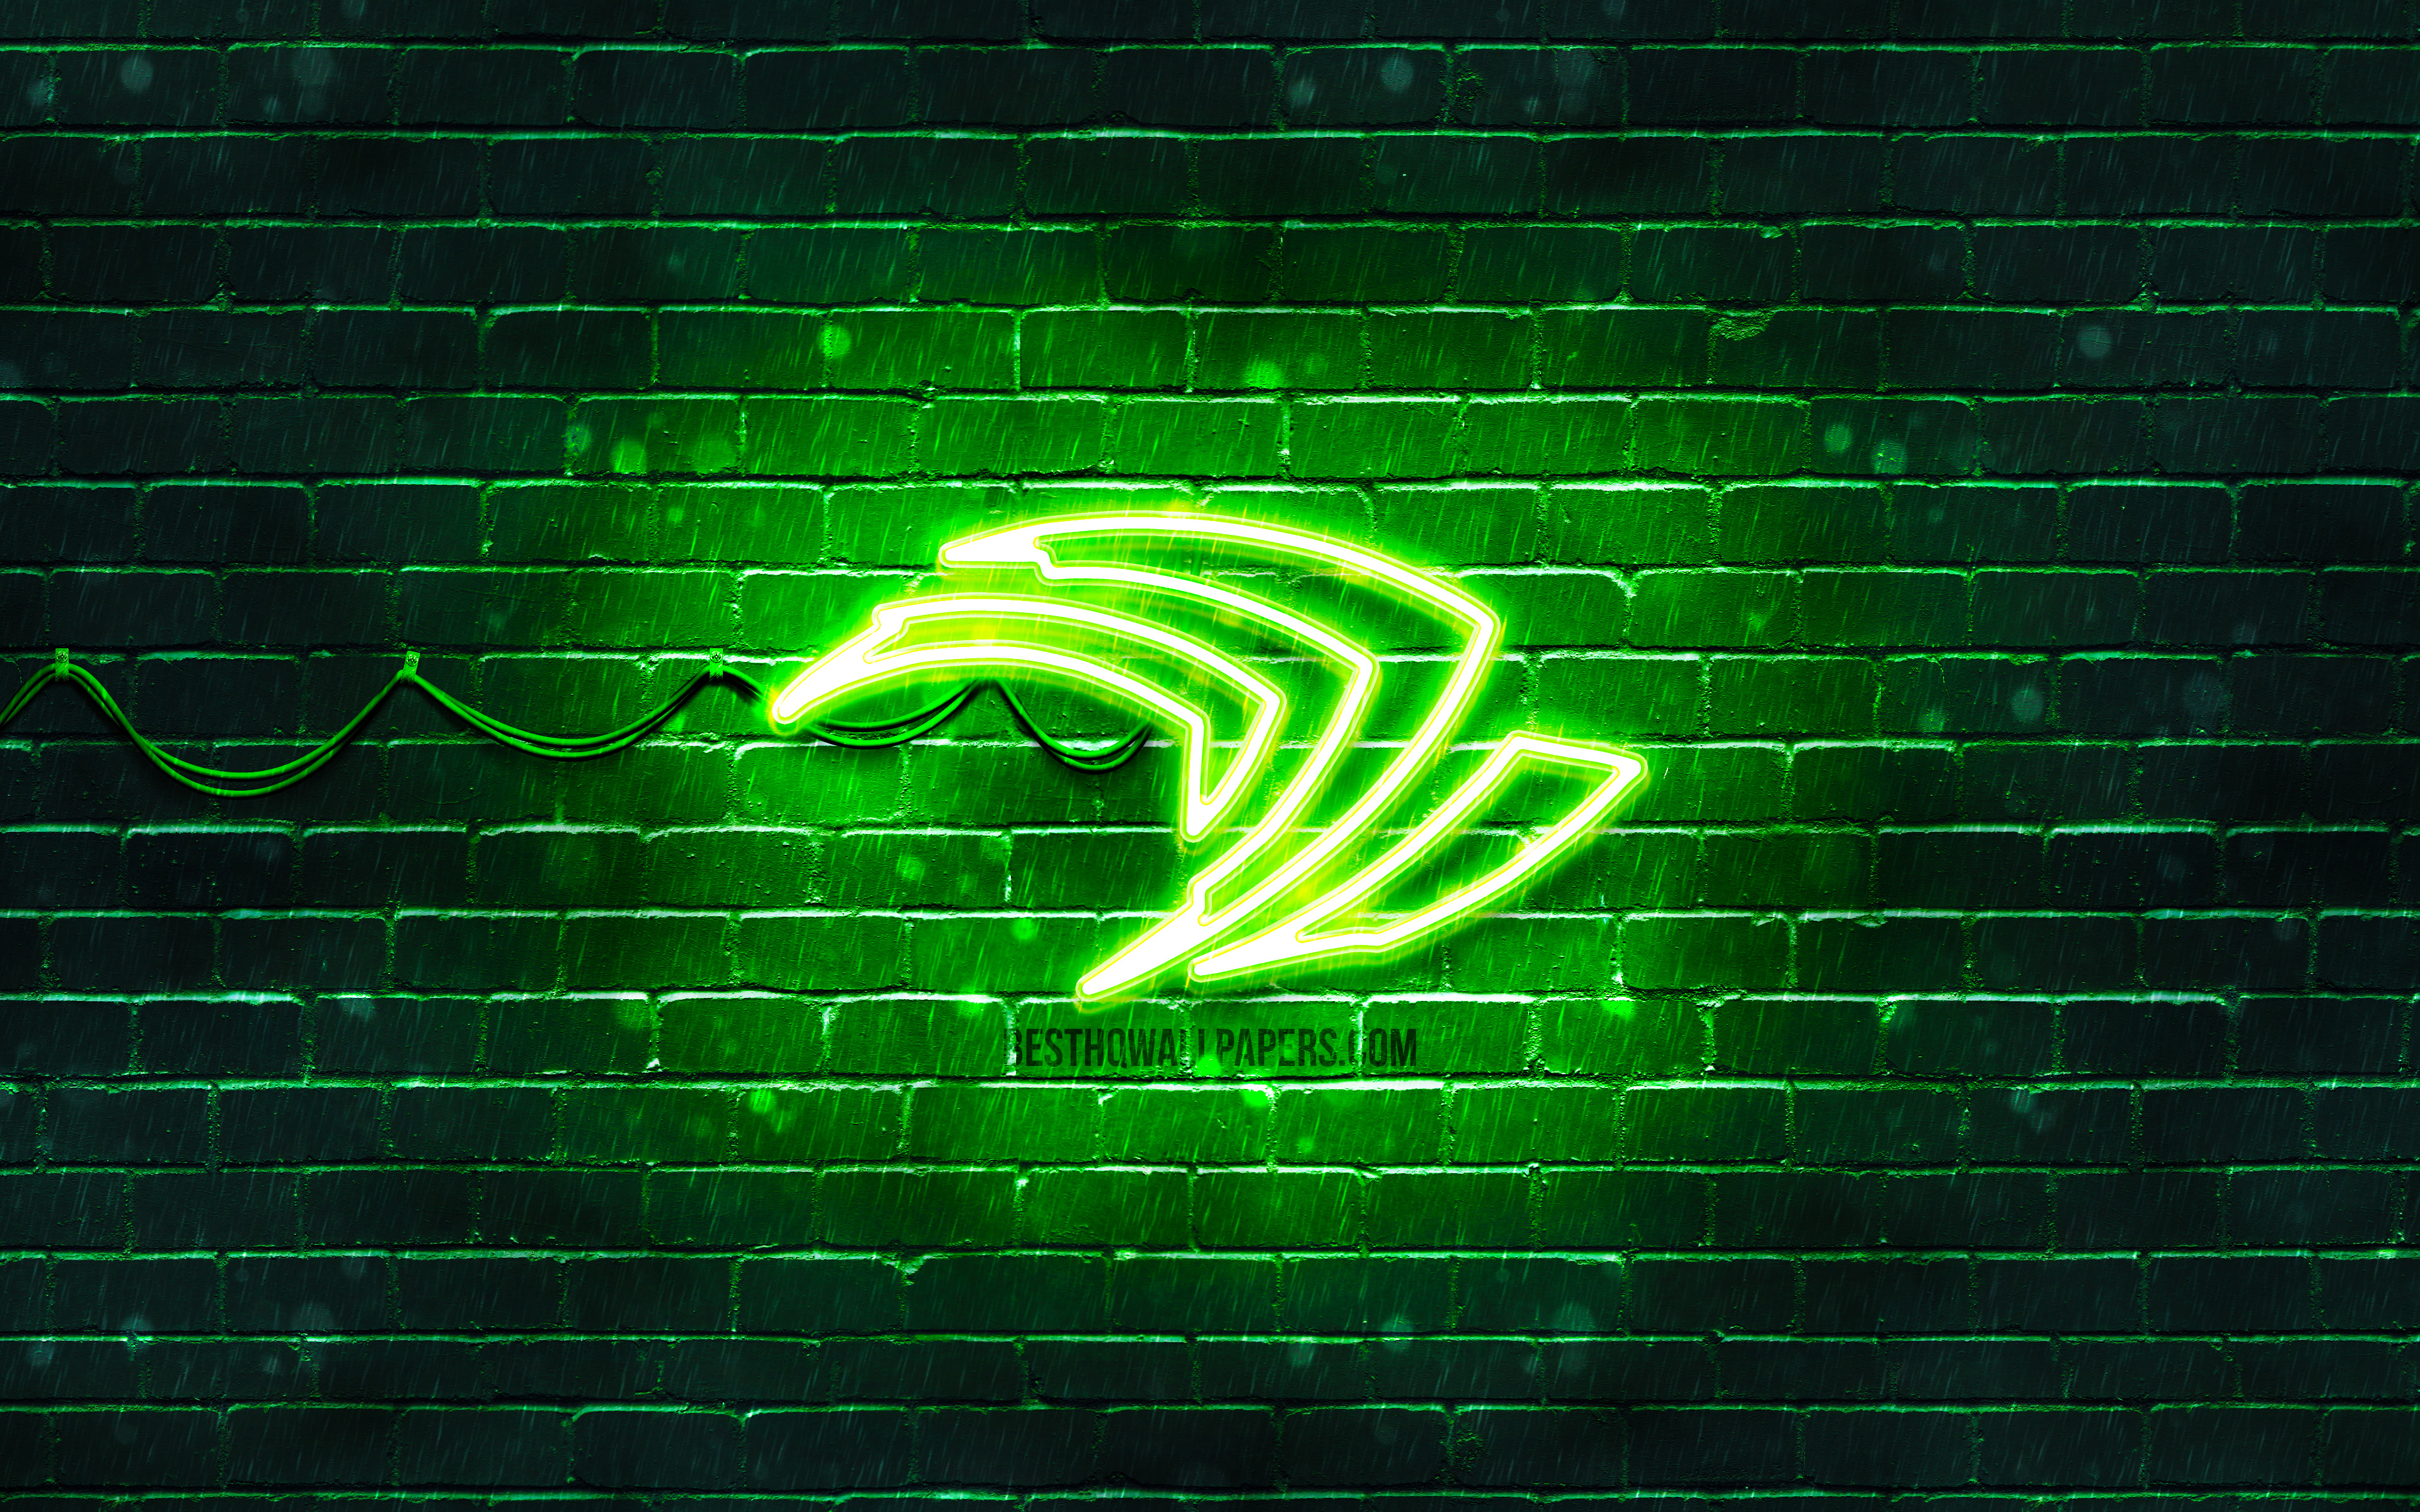 Download wallpaper Nvidia green logo